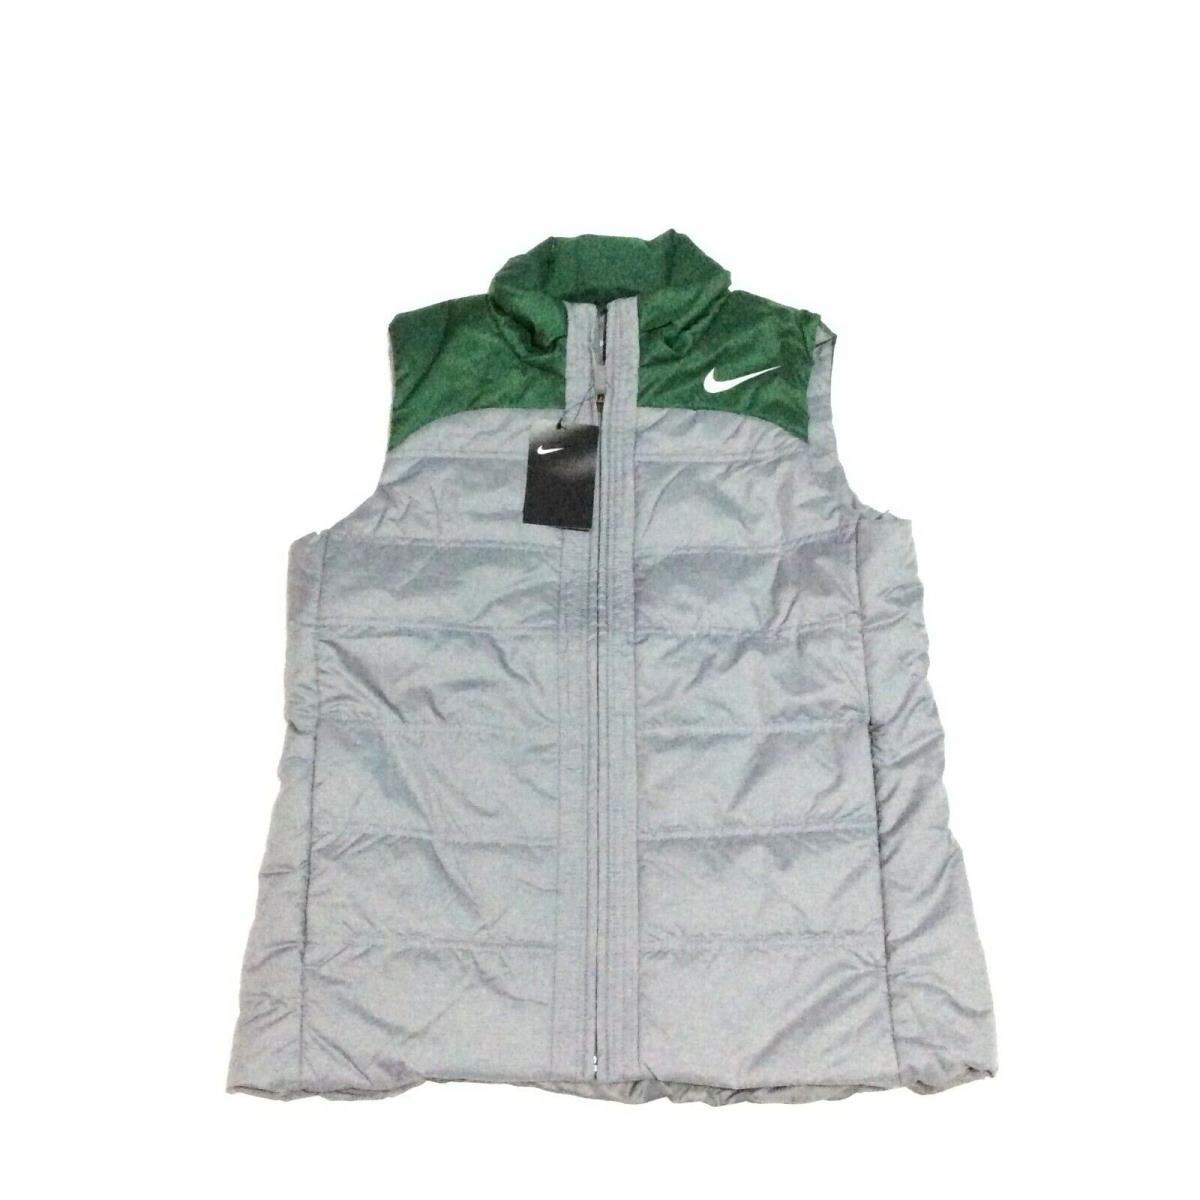 Nike Training Full Zip Puffer Vest Green Gray Women s Size Large